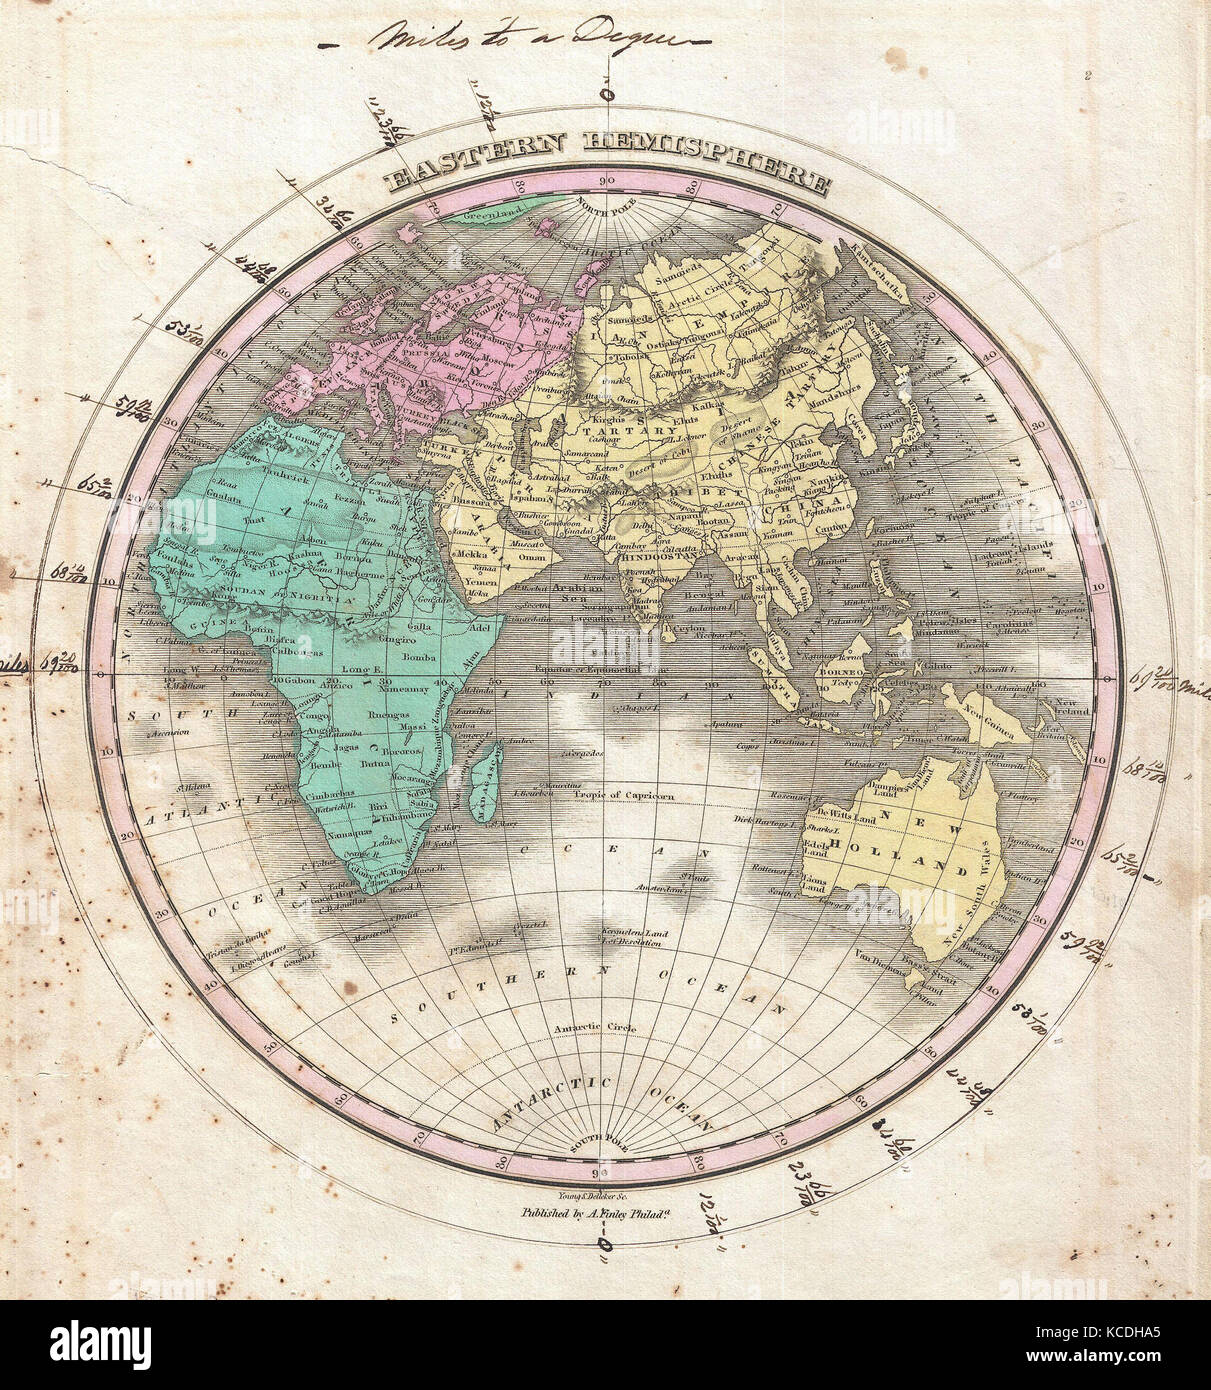 1827, Finley Karte der östlichen Hemisphäre, Asien, Australien, Europa, Afrika, Anthony Finley mapmaker der Vereinigten Staaten Stockfoto